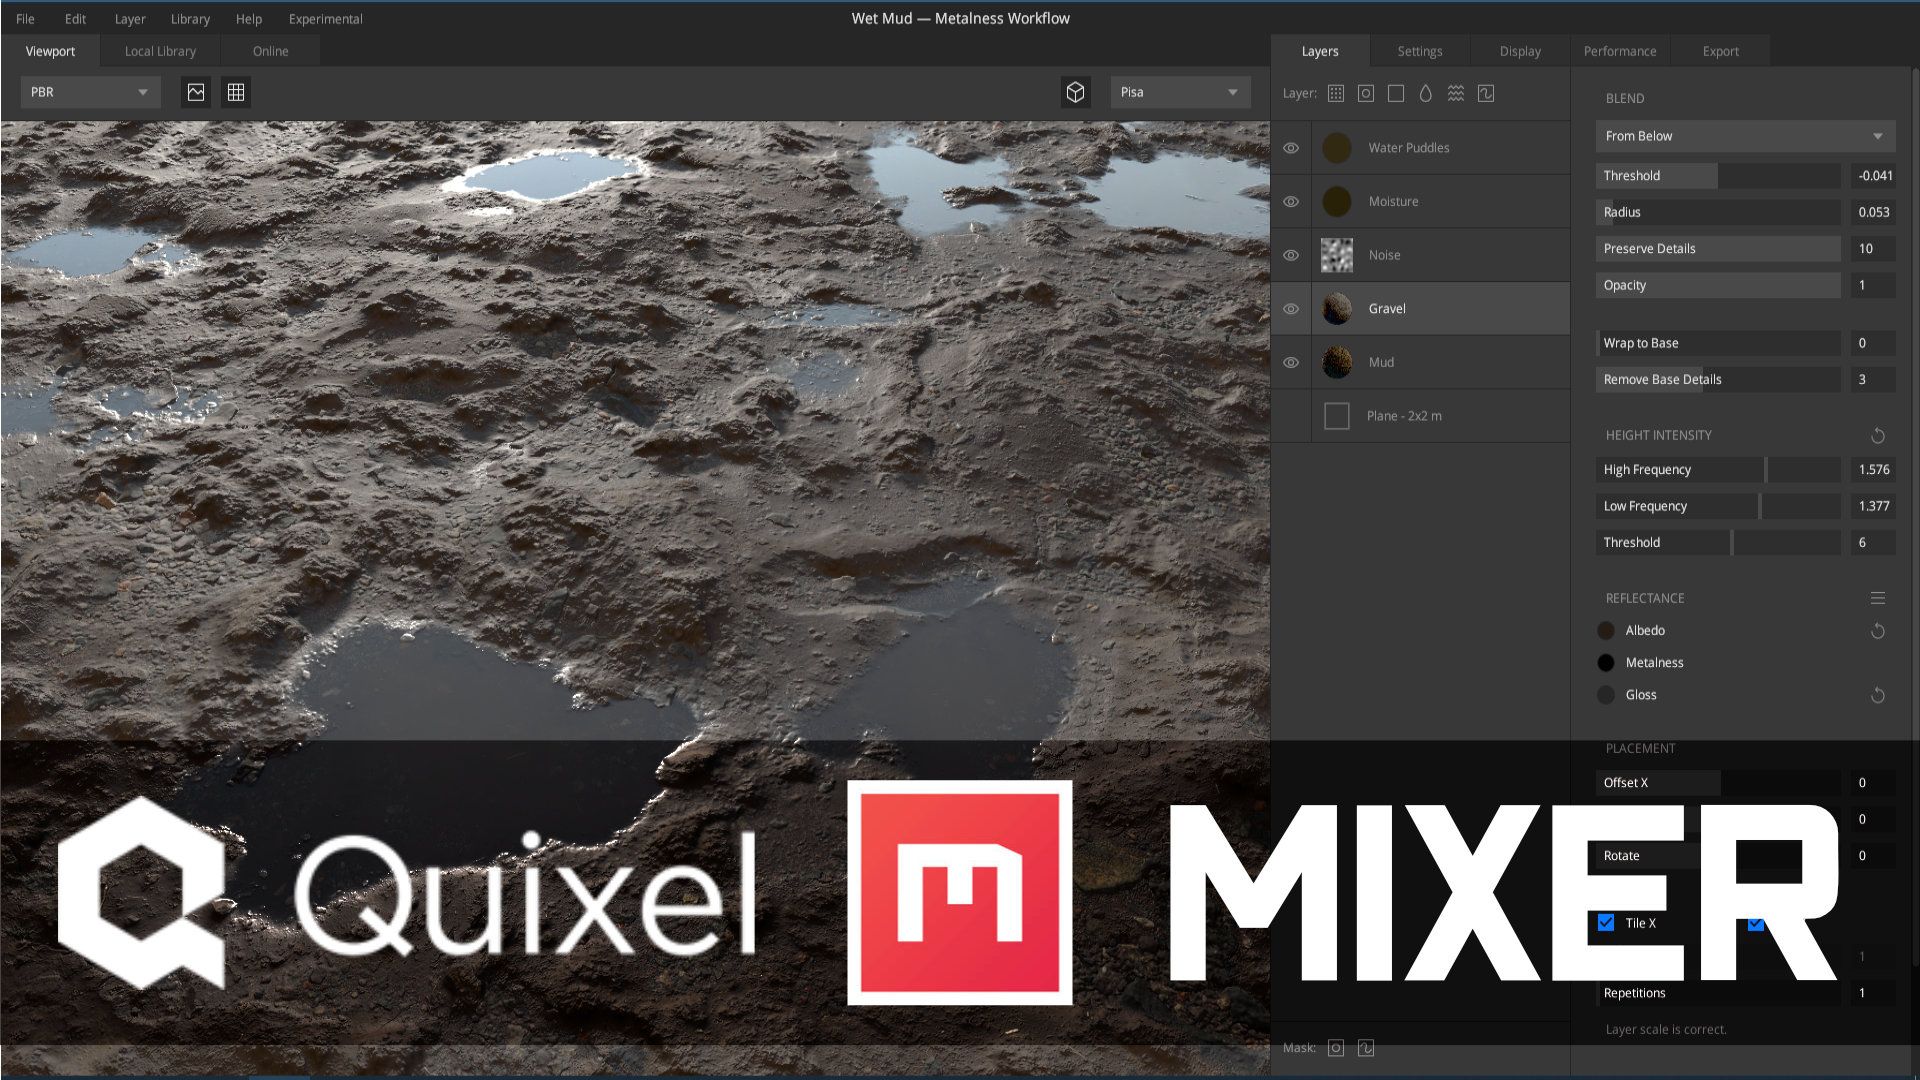 quixel mixer tiles